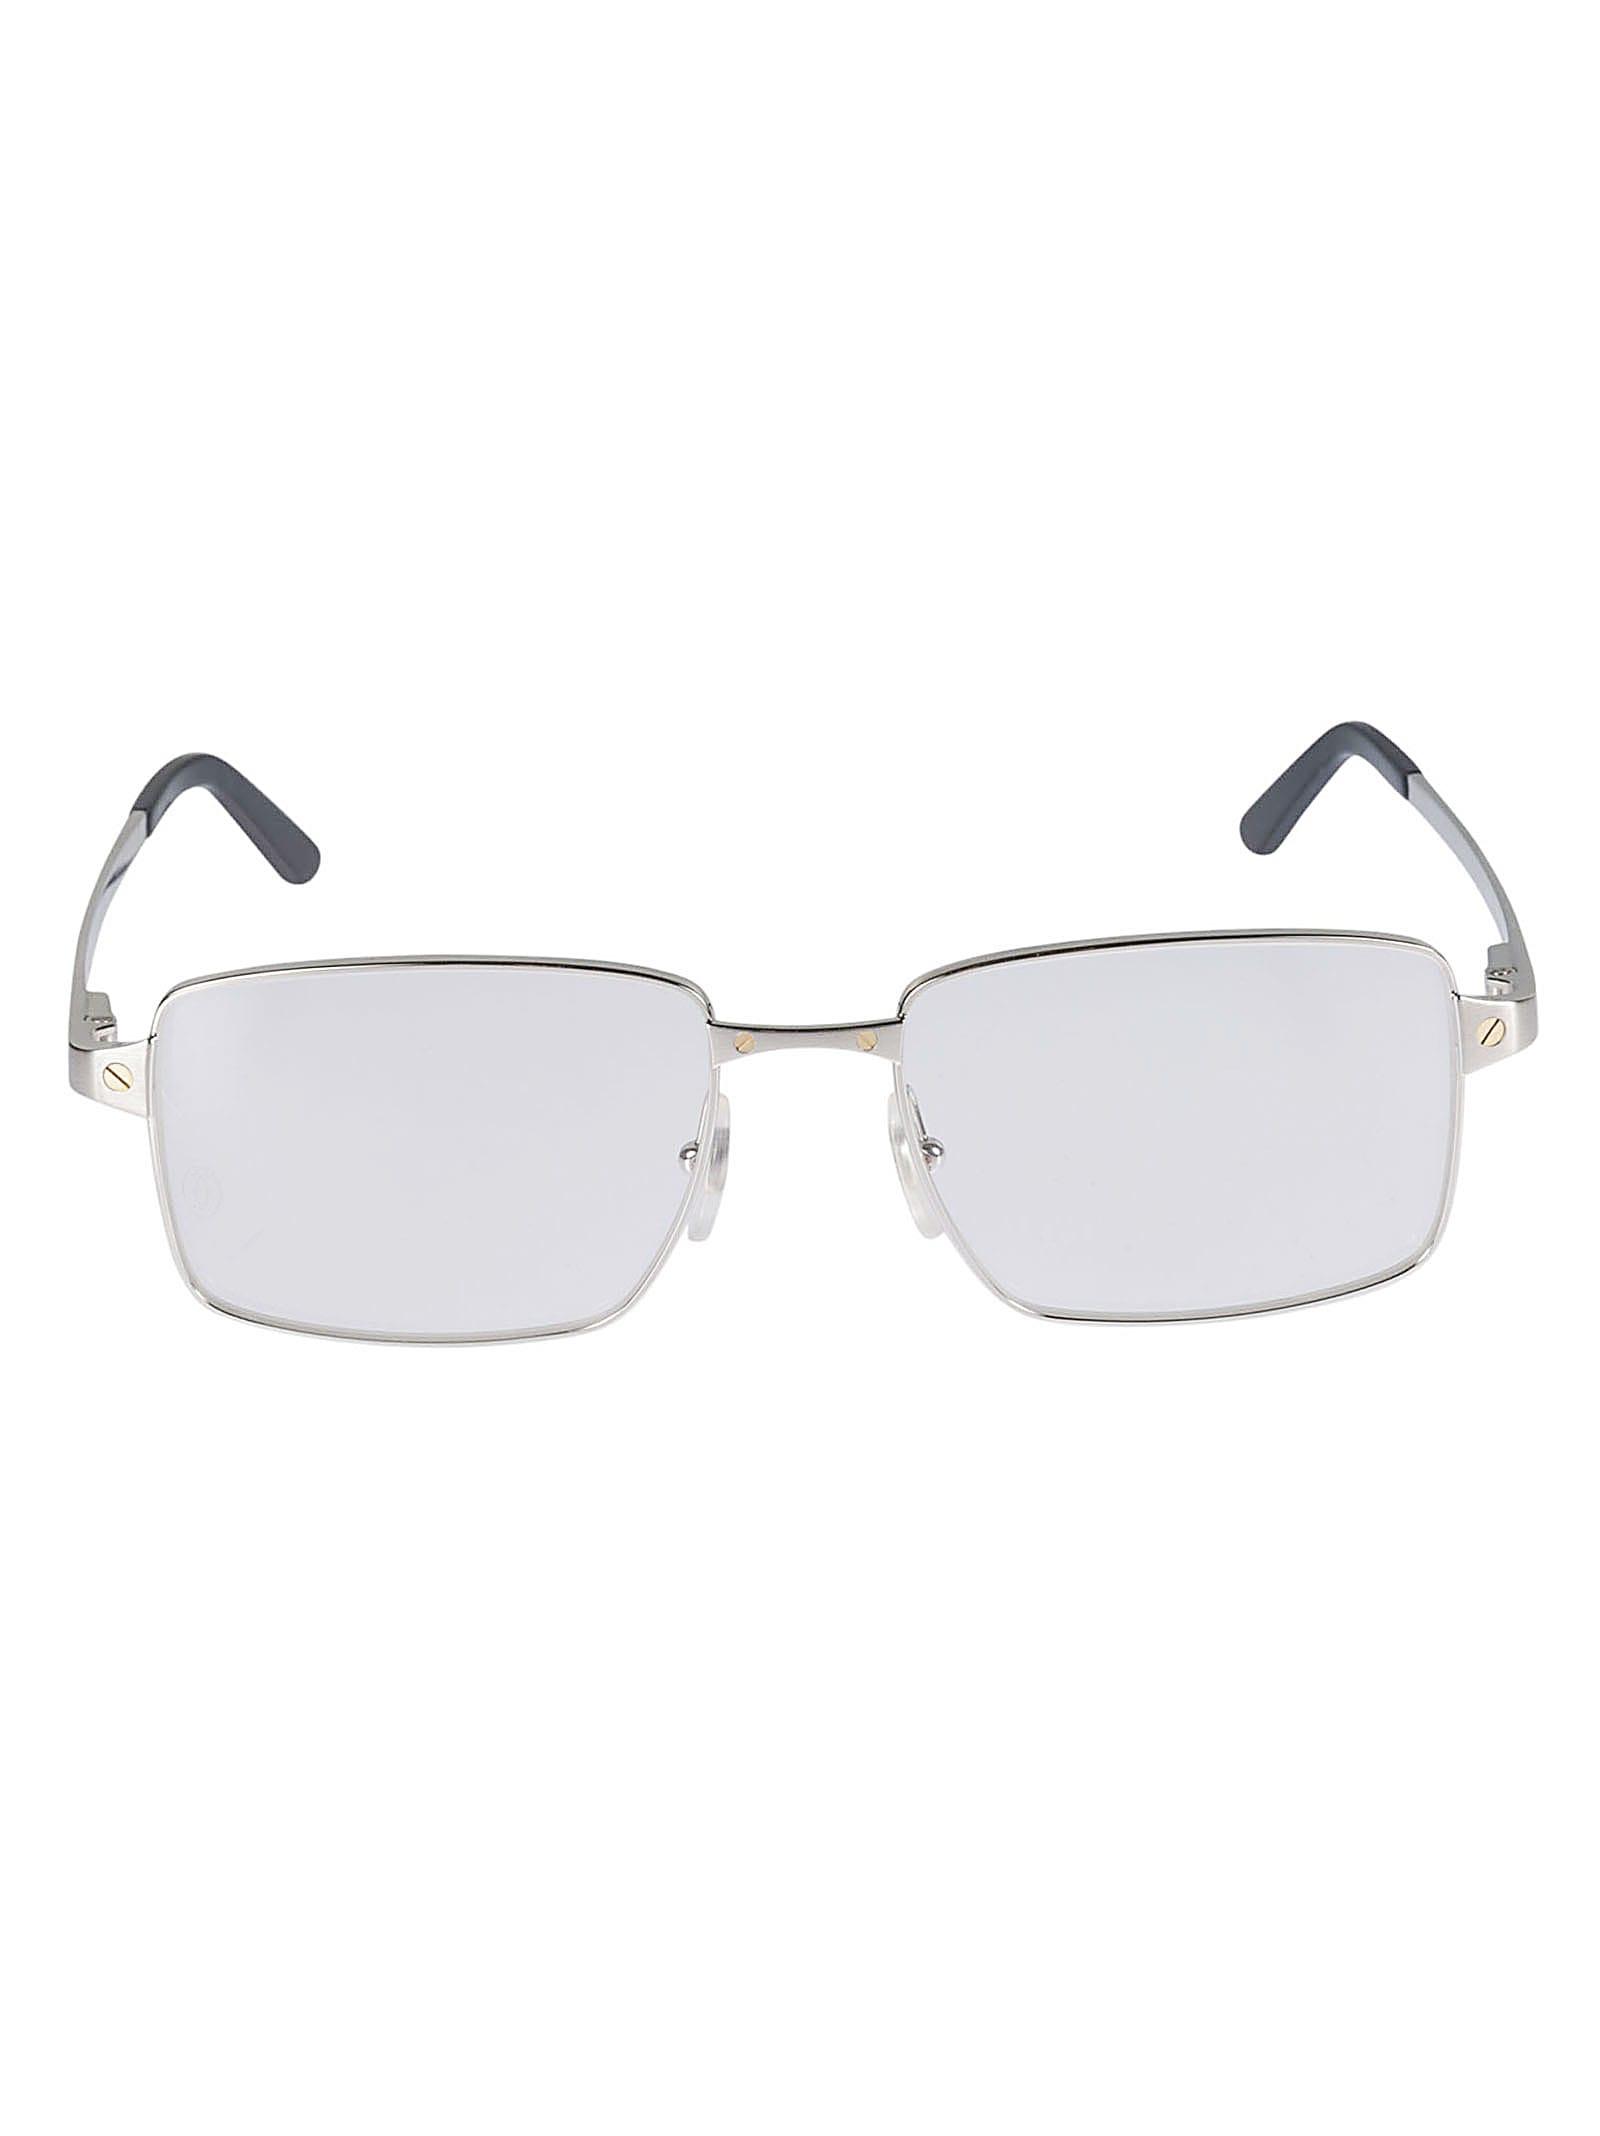 Cartier Santos De Cartier Glasses for Men | Lyst